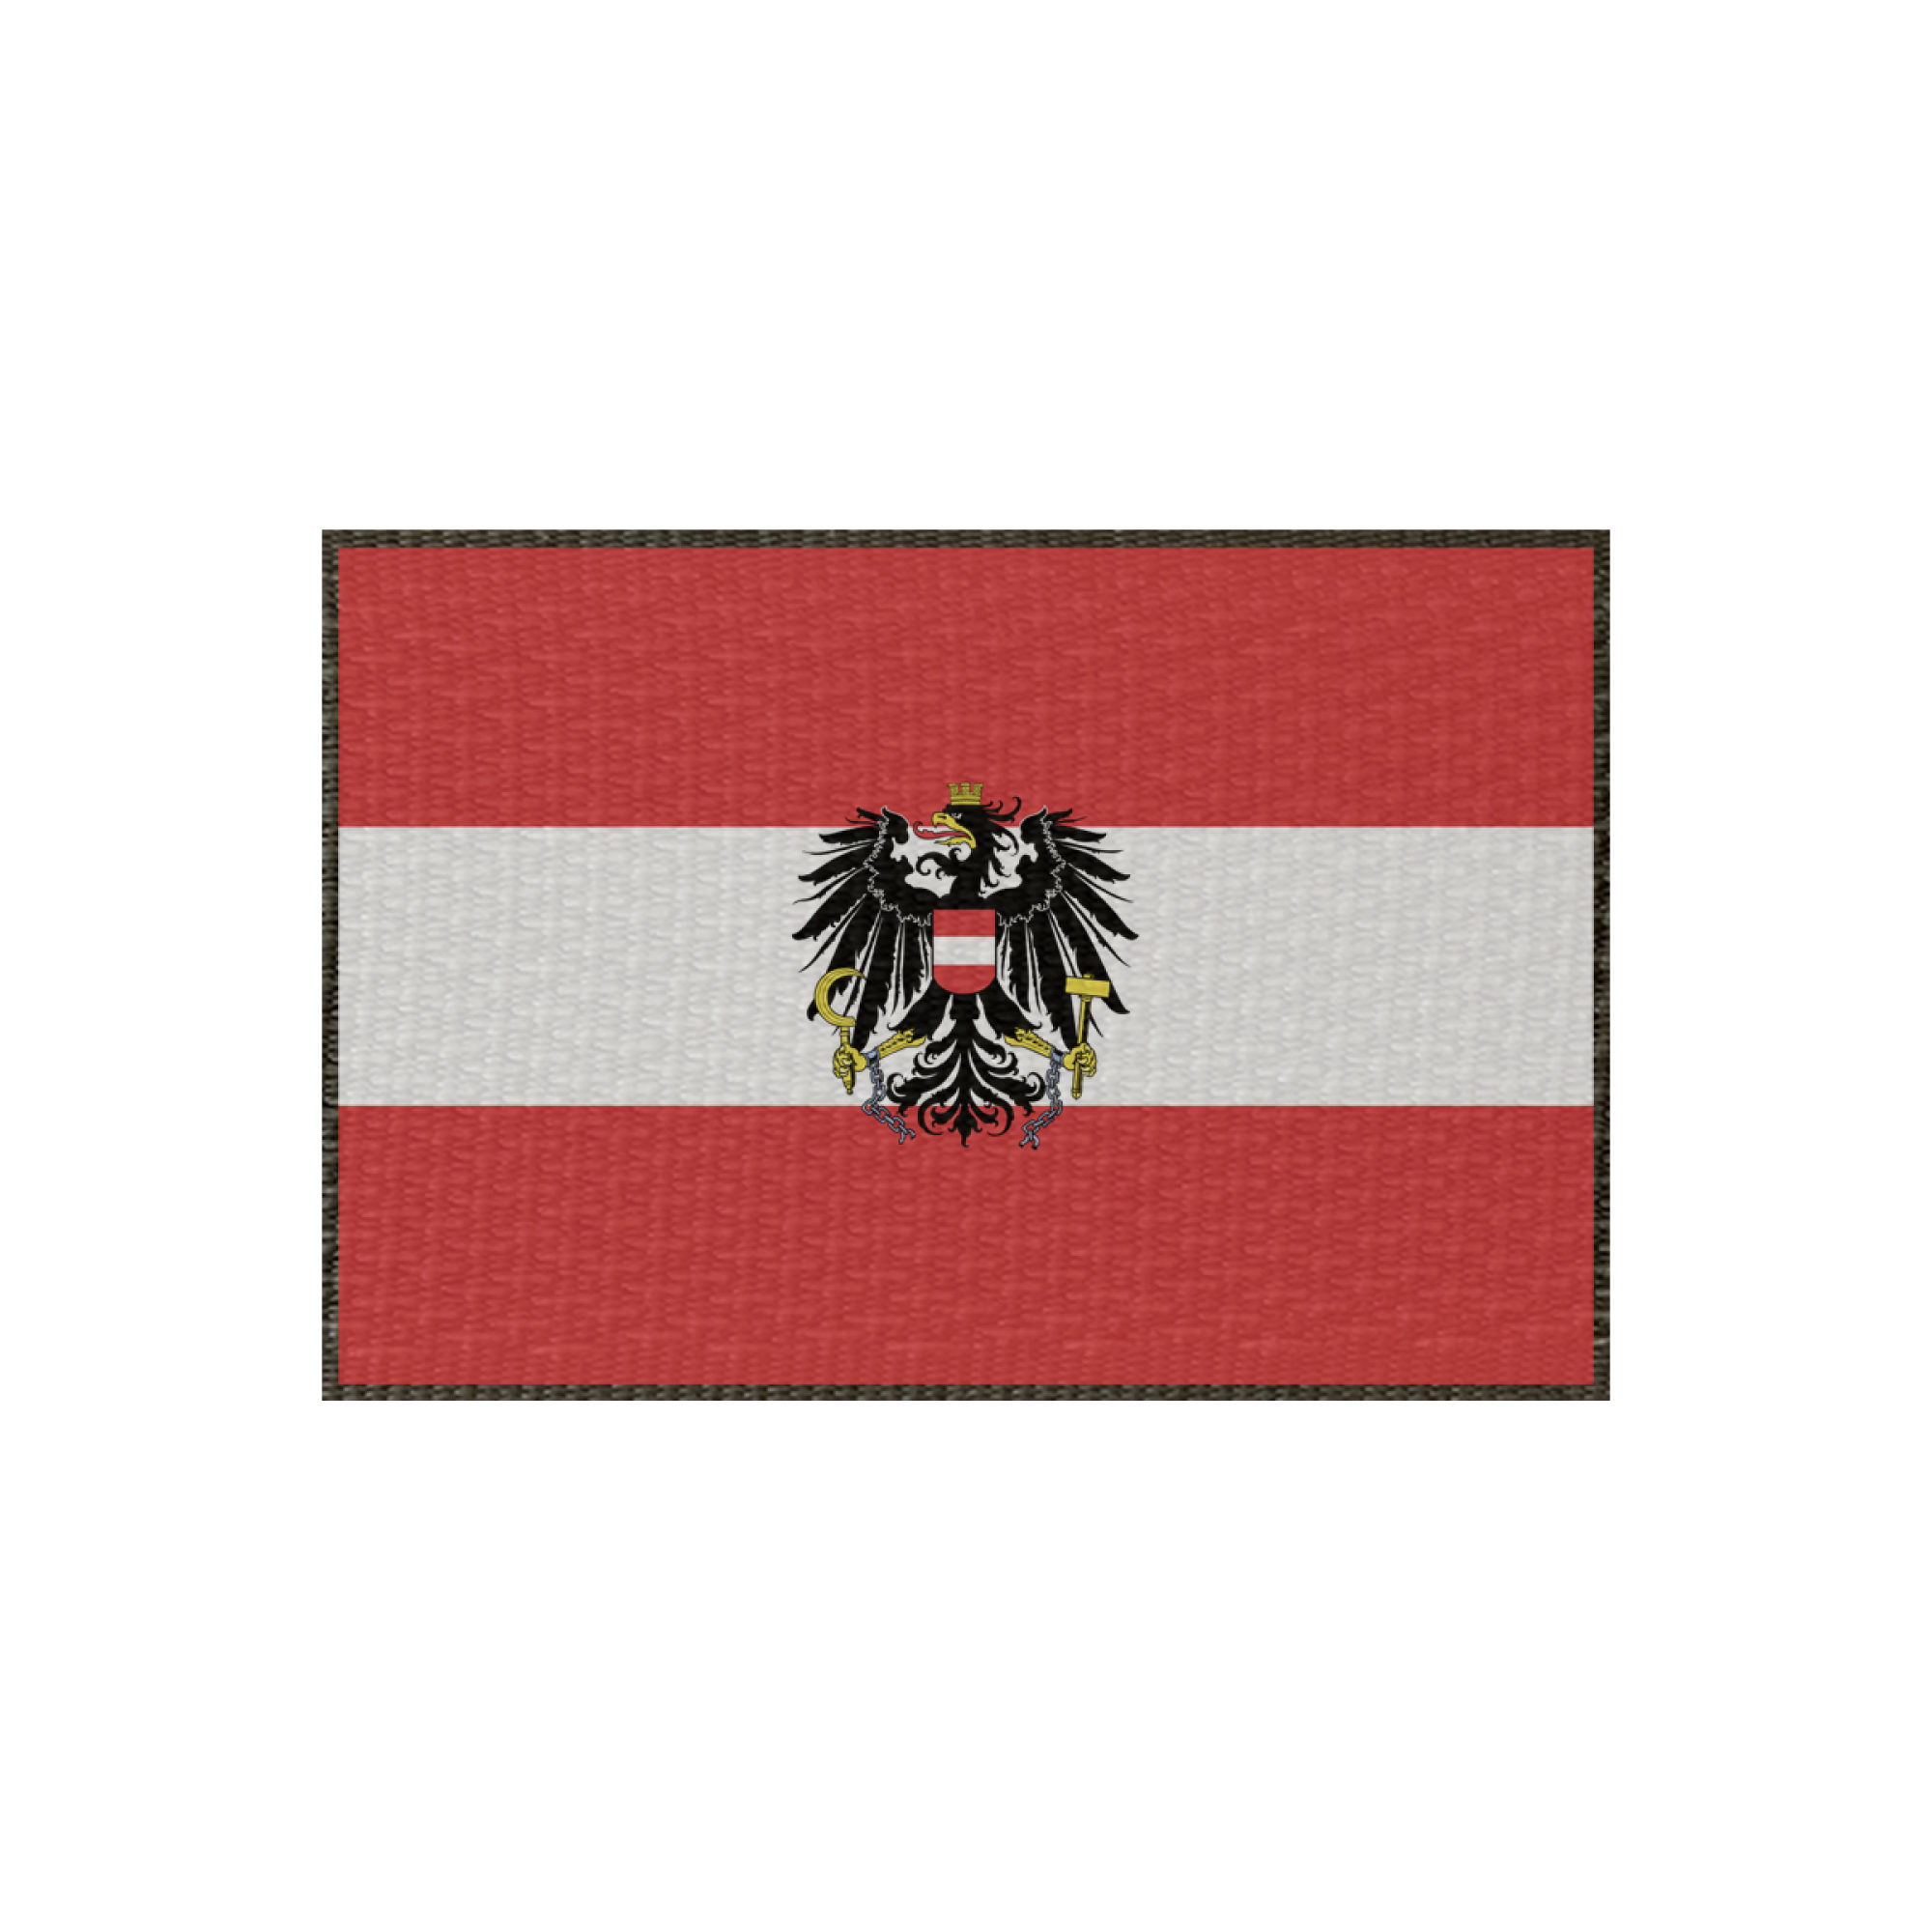 Patch Flagge Österreich 45x30mm, Klett